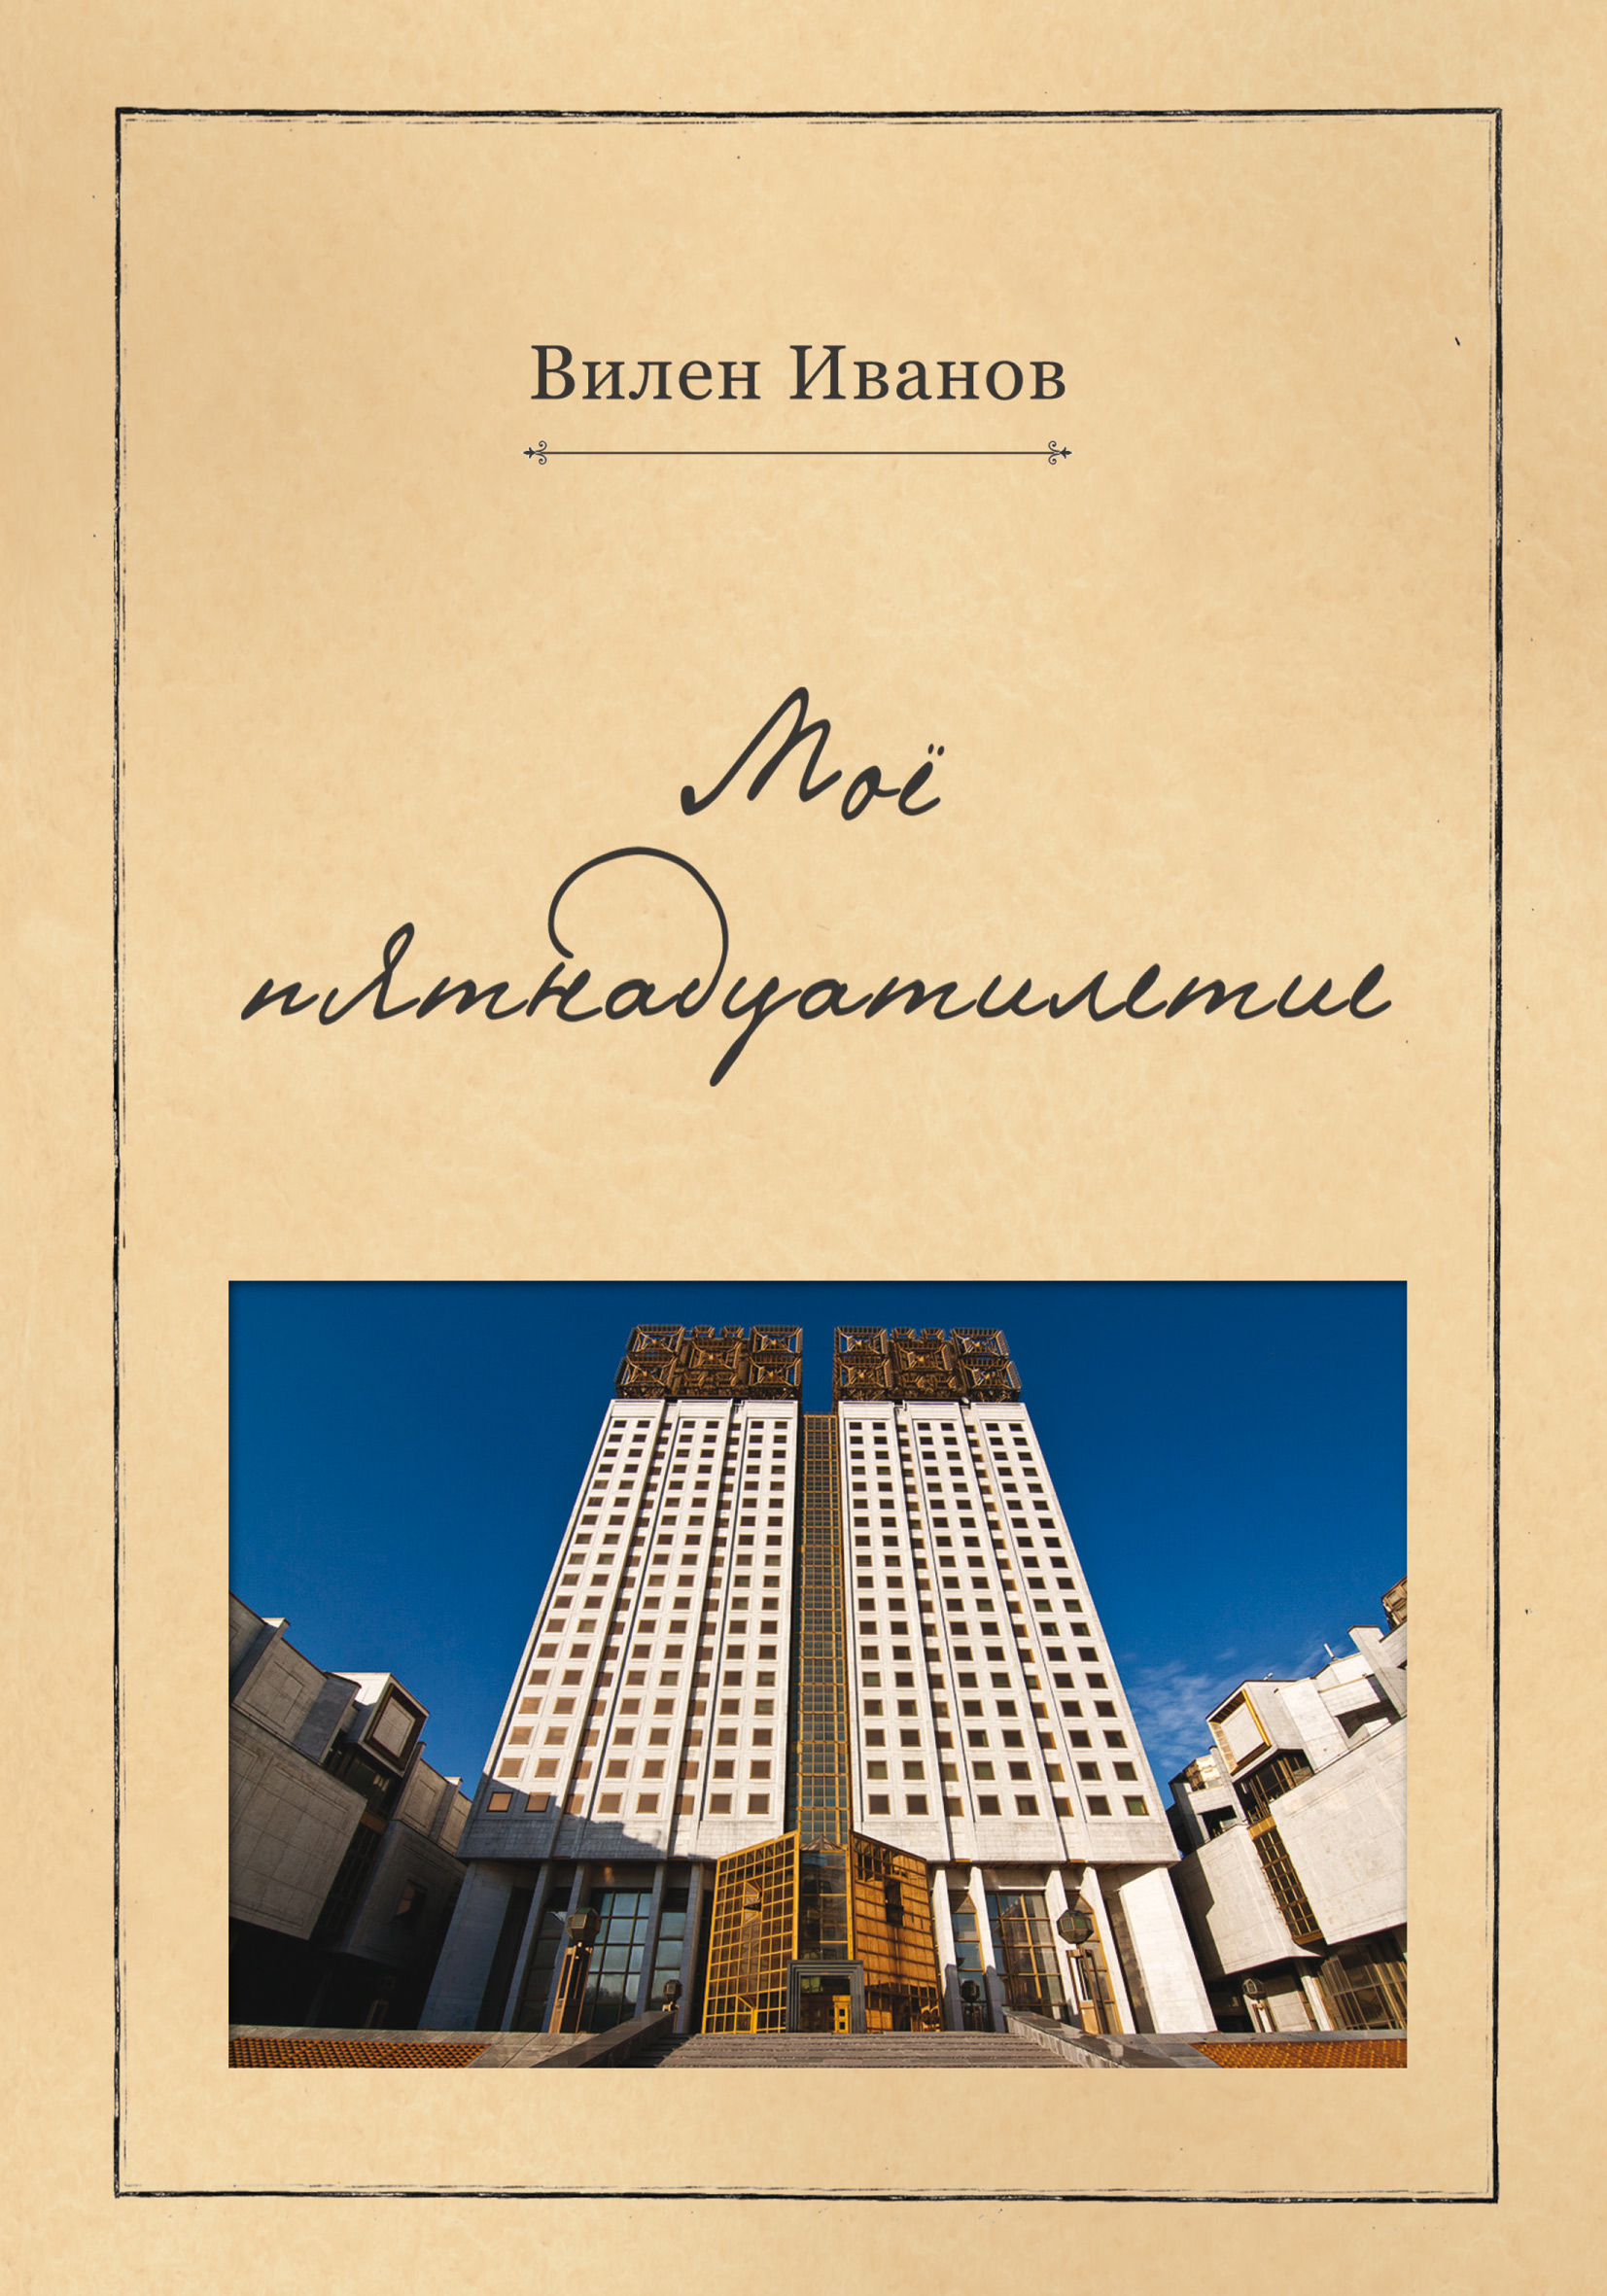 Книга Моё пятнадцатилетие из серии , созданная Вилен Иванов, может относится к жанру Биографии и Мемуары, Поэзия. Стоимость электронной книги Моё пятнадцатилетие с идентификатором 24725529 составляет 109.00 руб.